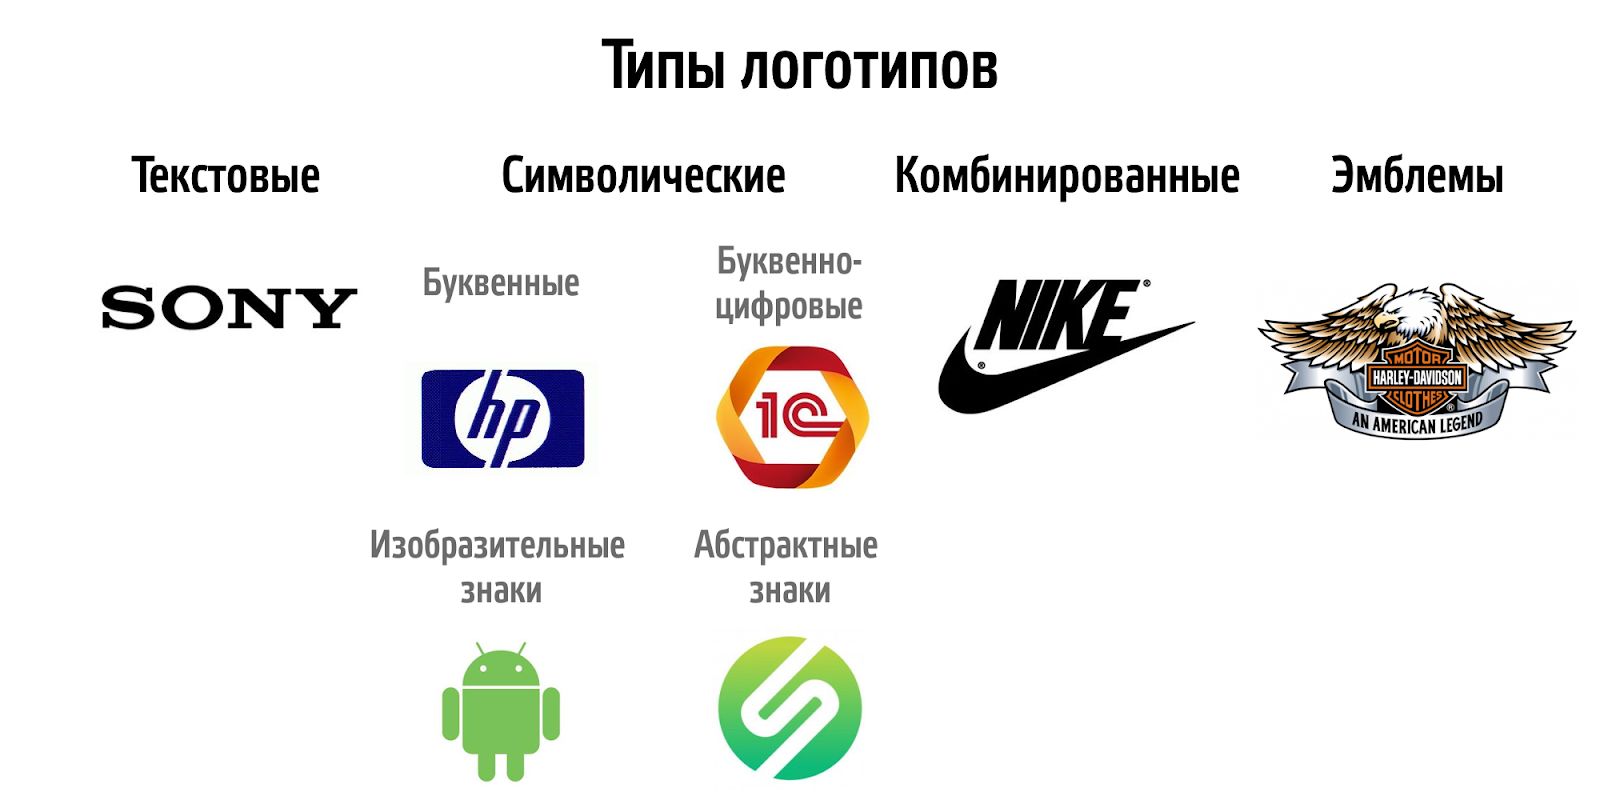 Цвет логотипа: рекомендации по выбору сочетания оттенков при создании лого компании